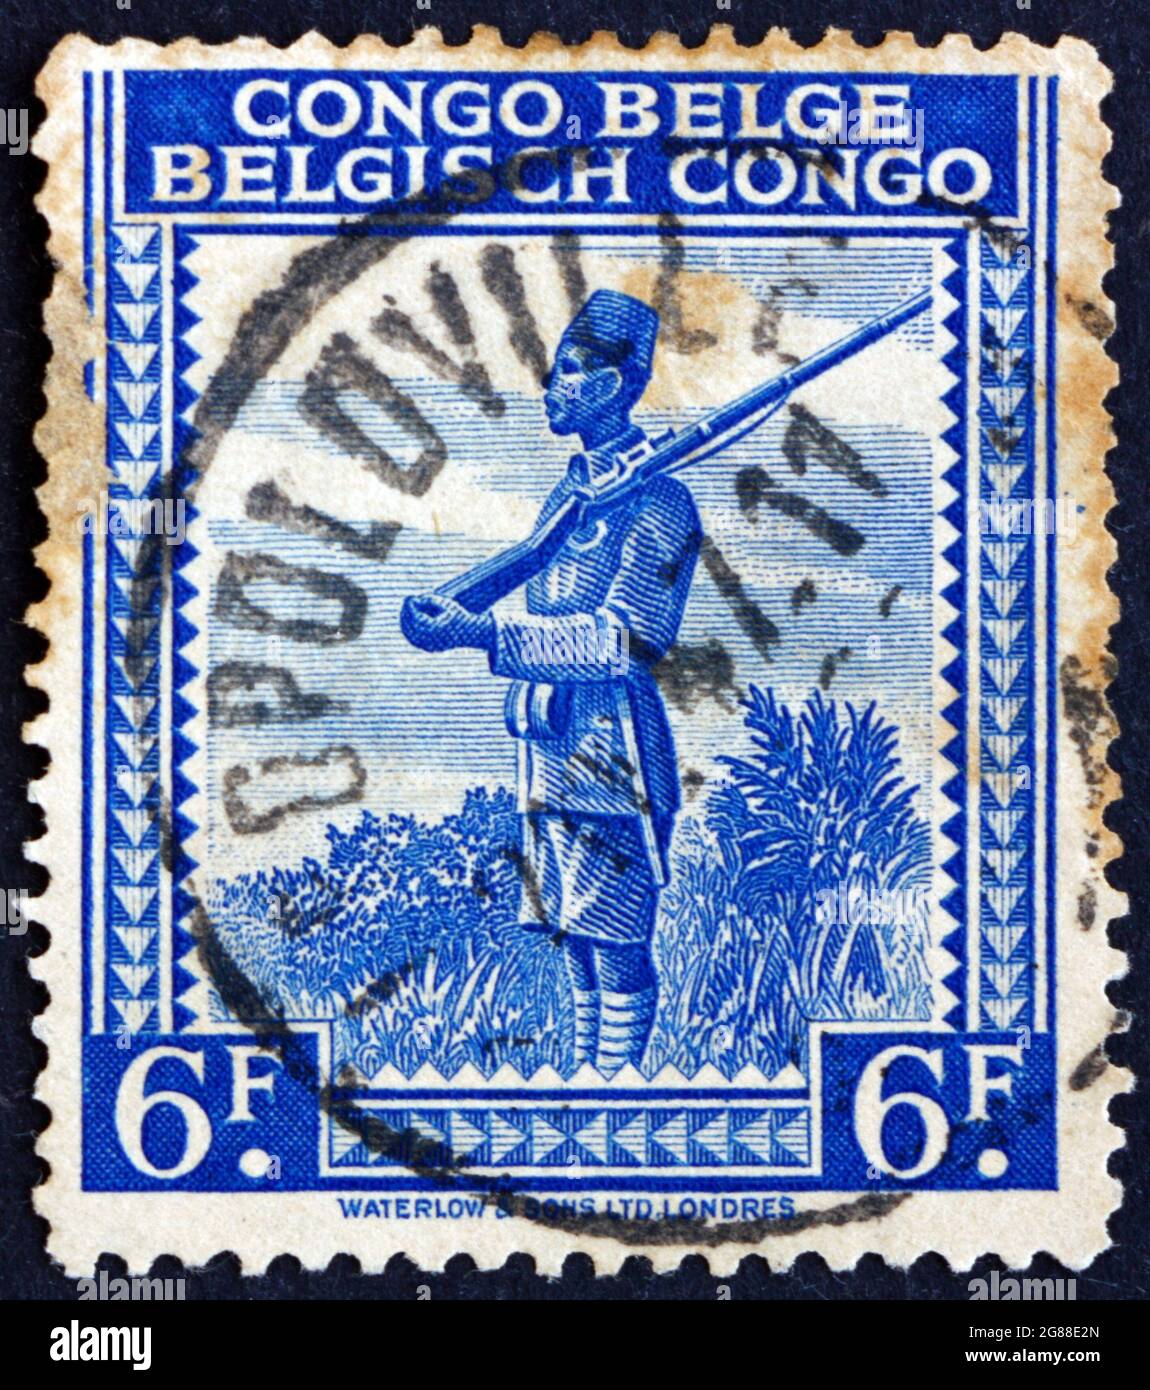 BELGISCHER KONGO - UM 1942: Eine im belgischen Kongo gedruckte Marke zeigt Askari, einen lokalen Soldaten, der in der Armee der europäischen Kolonialmacht in Afrika dient, Stockfoto